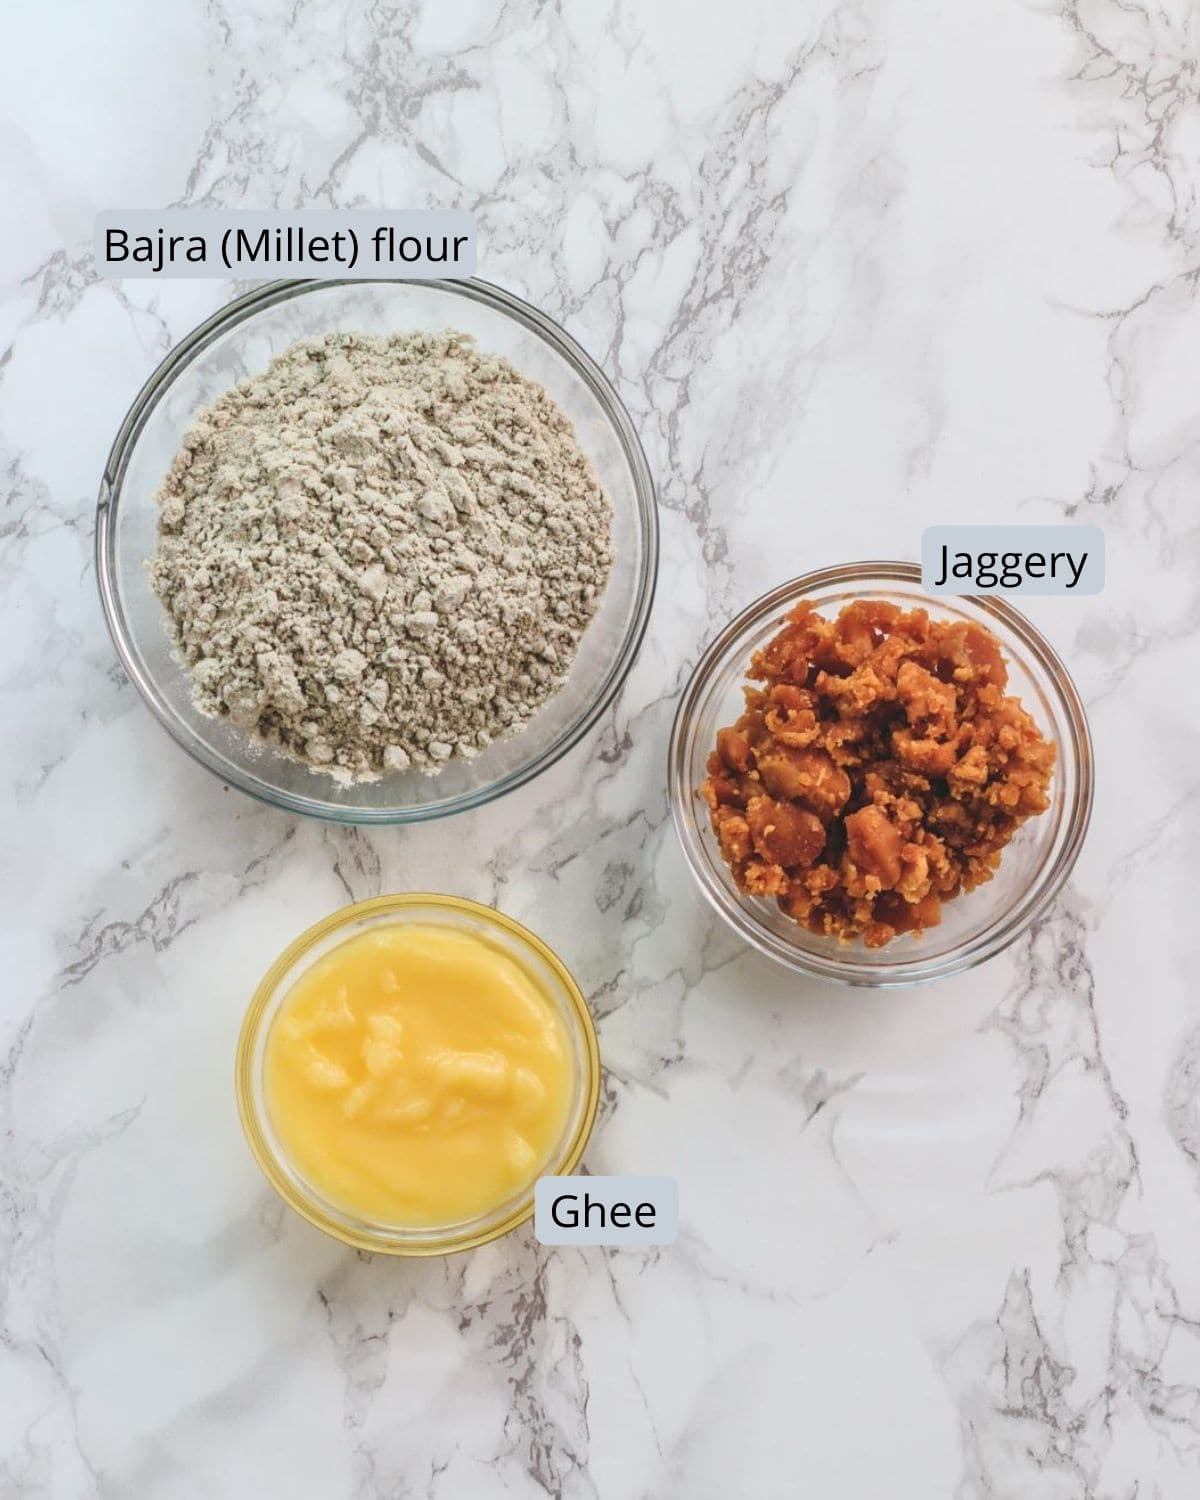 image of ingredients used in kuler. Shows bajra flour, jaggery, ghee